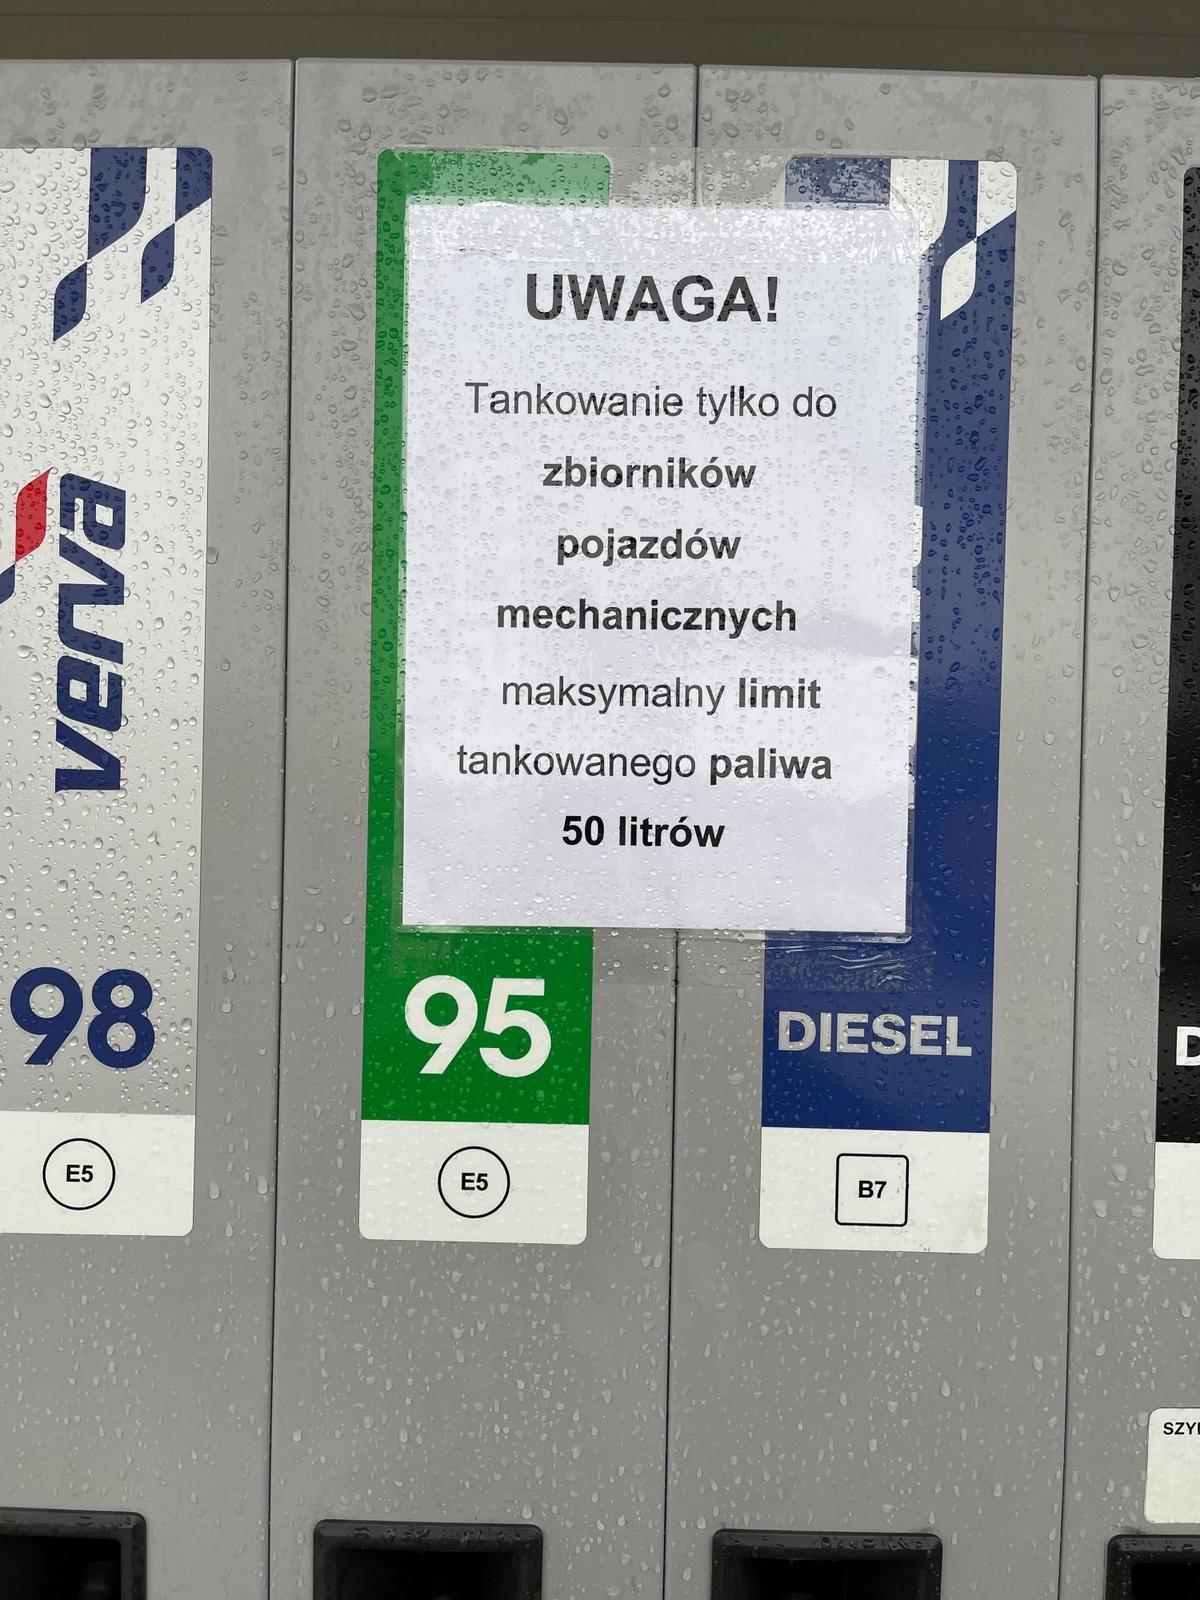 Limity tankowania na stacji paliw Orlen - źródło: własne class="wp-image-2064635" 